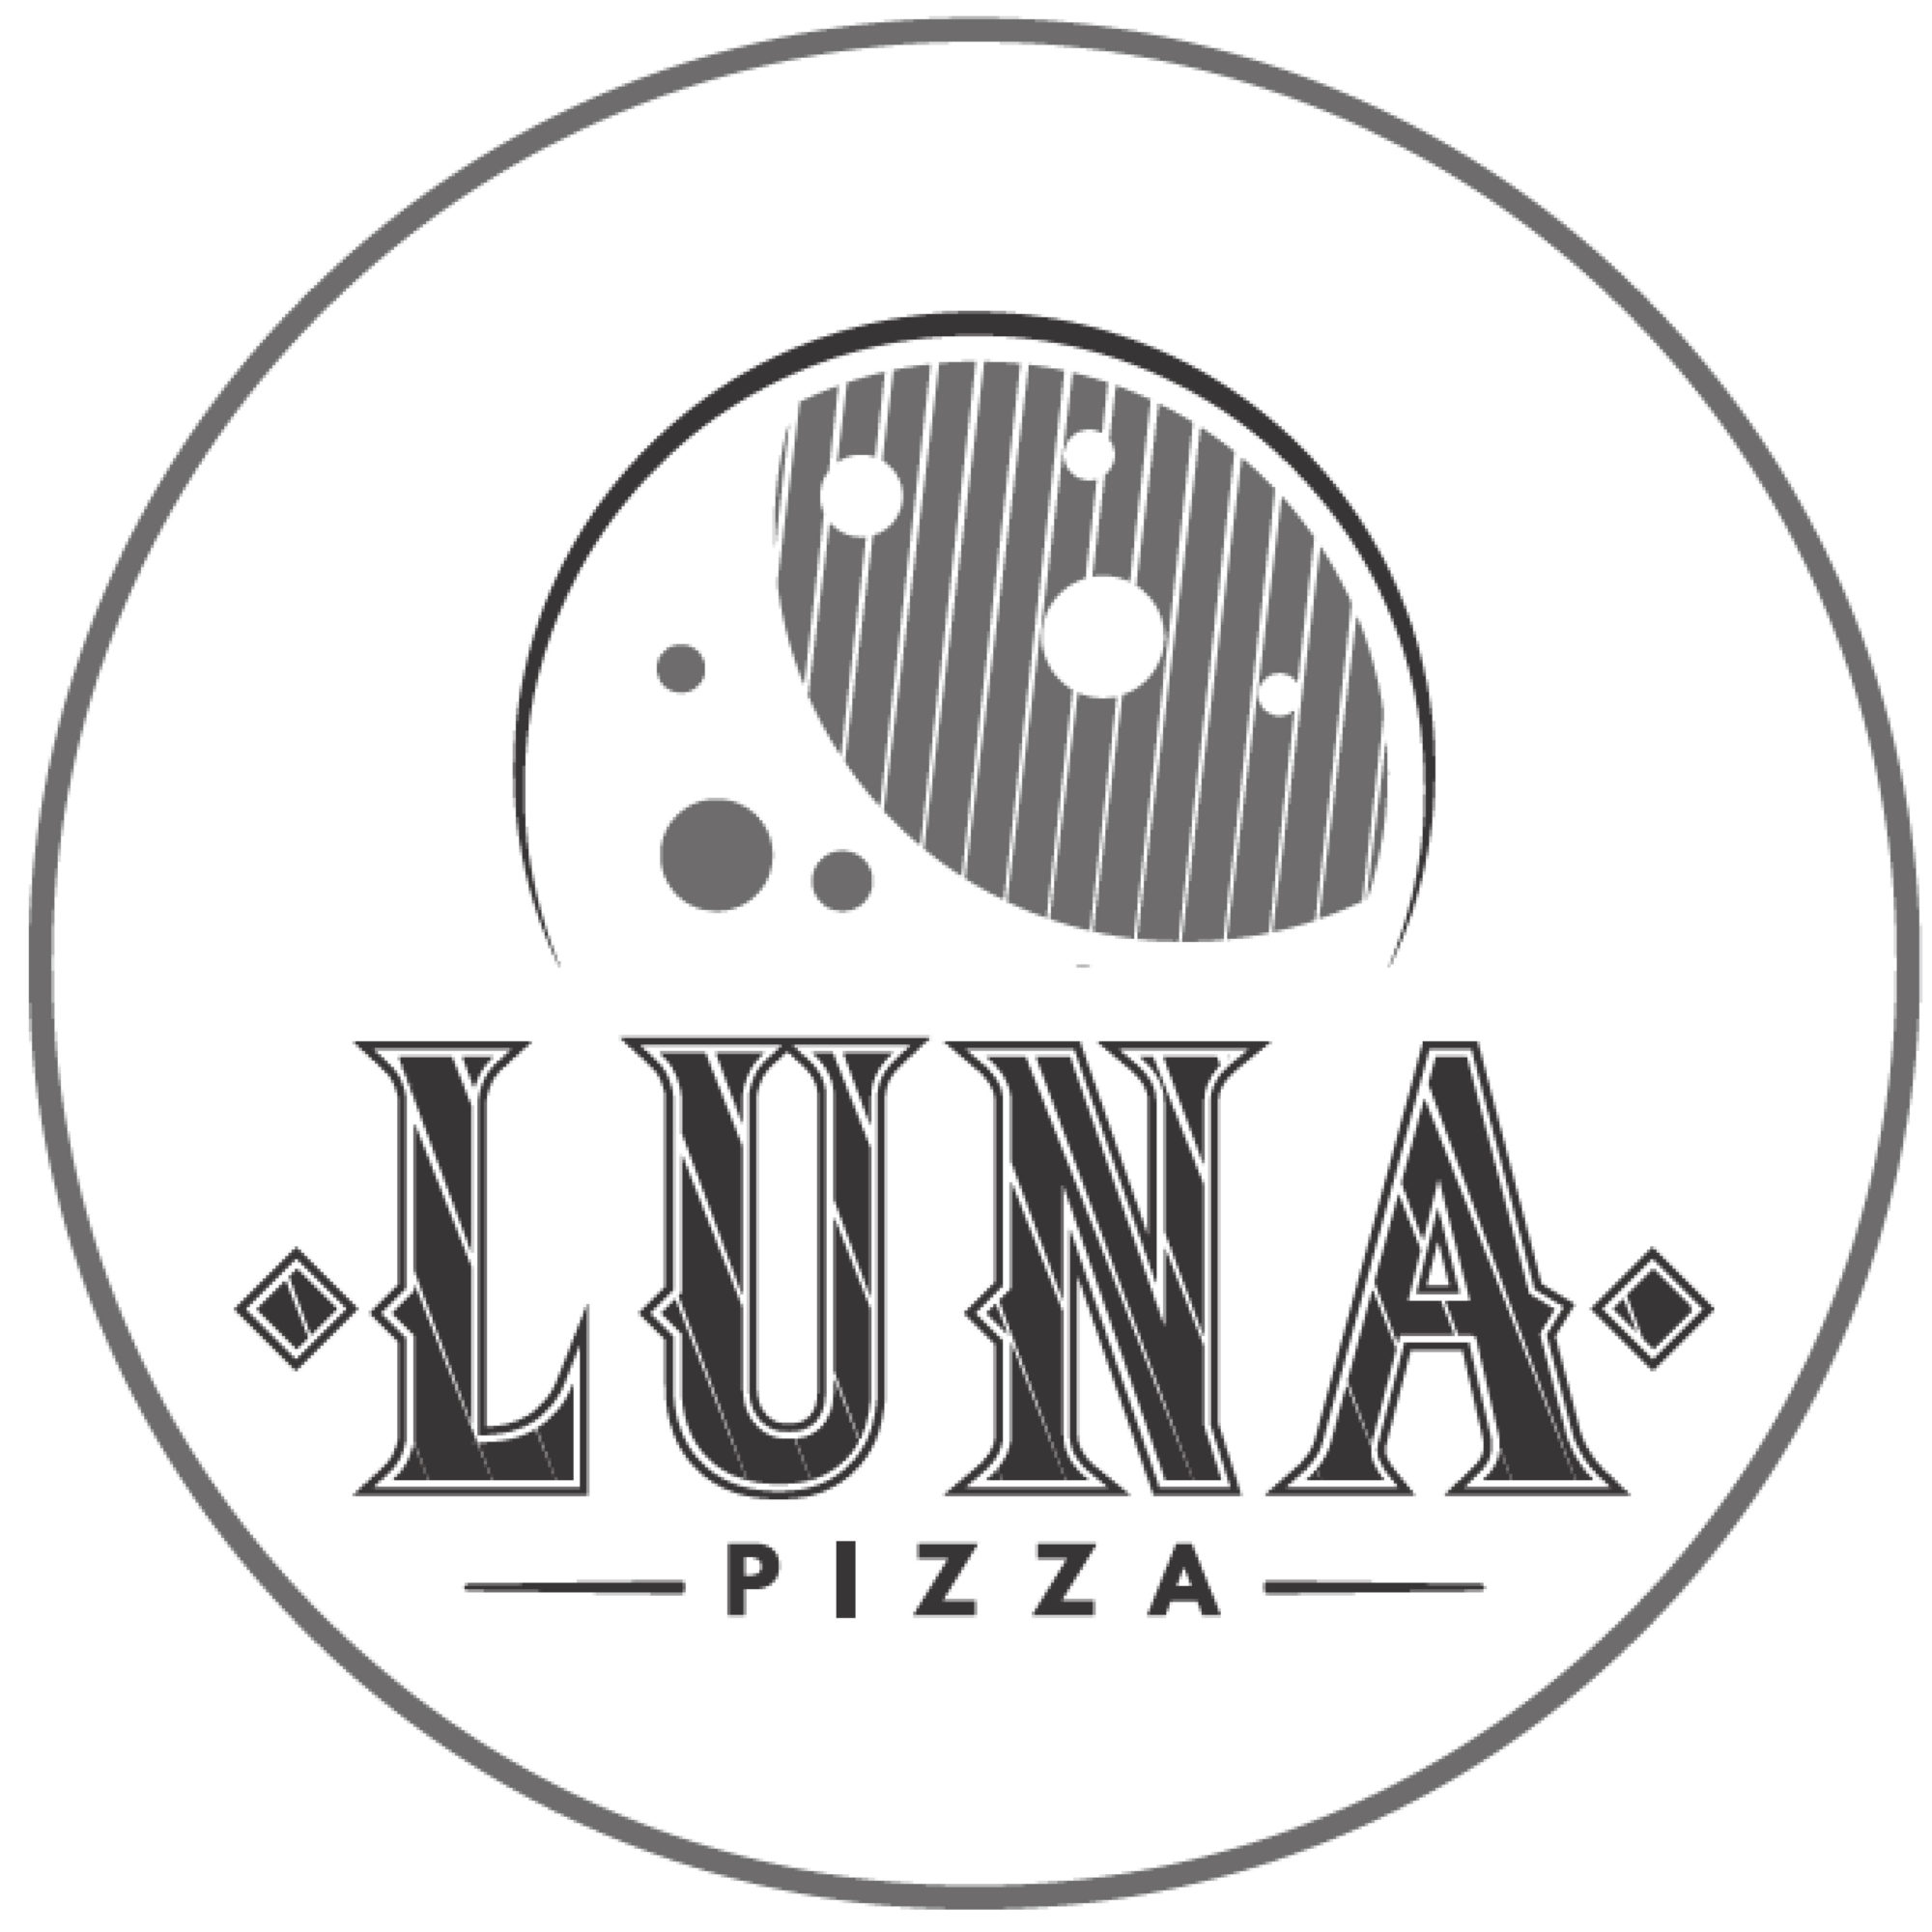 Luna Pizza Cafe